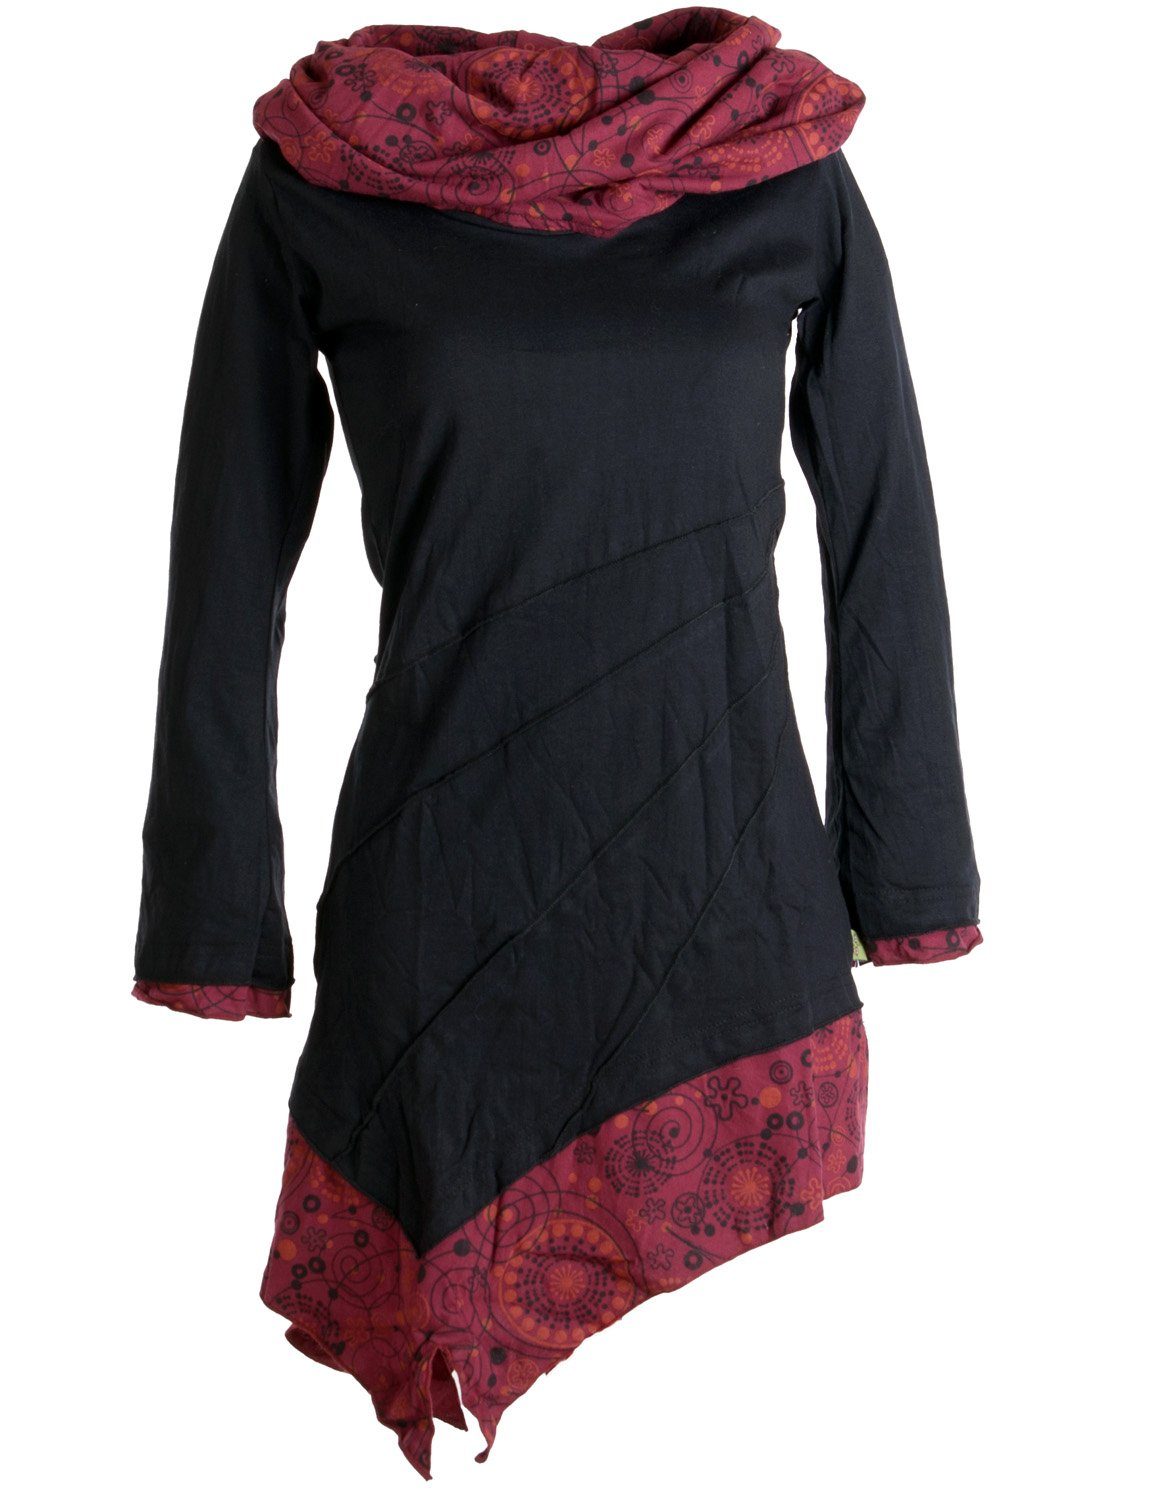 Asymmetrisches Boho Style Kleid Jerseykleid Vishes Hippie, schwarz-rot mit Goa, aus Ethno, Schalkragen Baumwolle